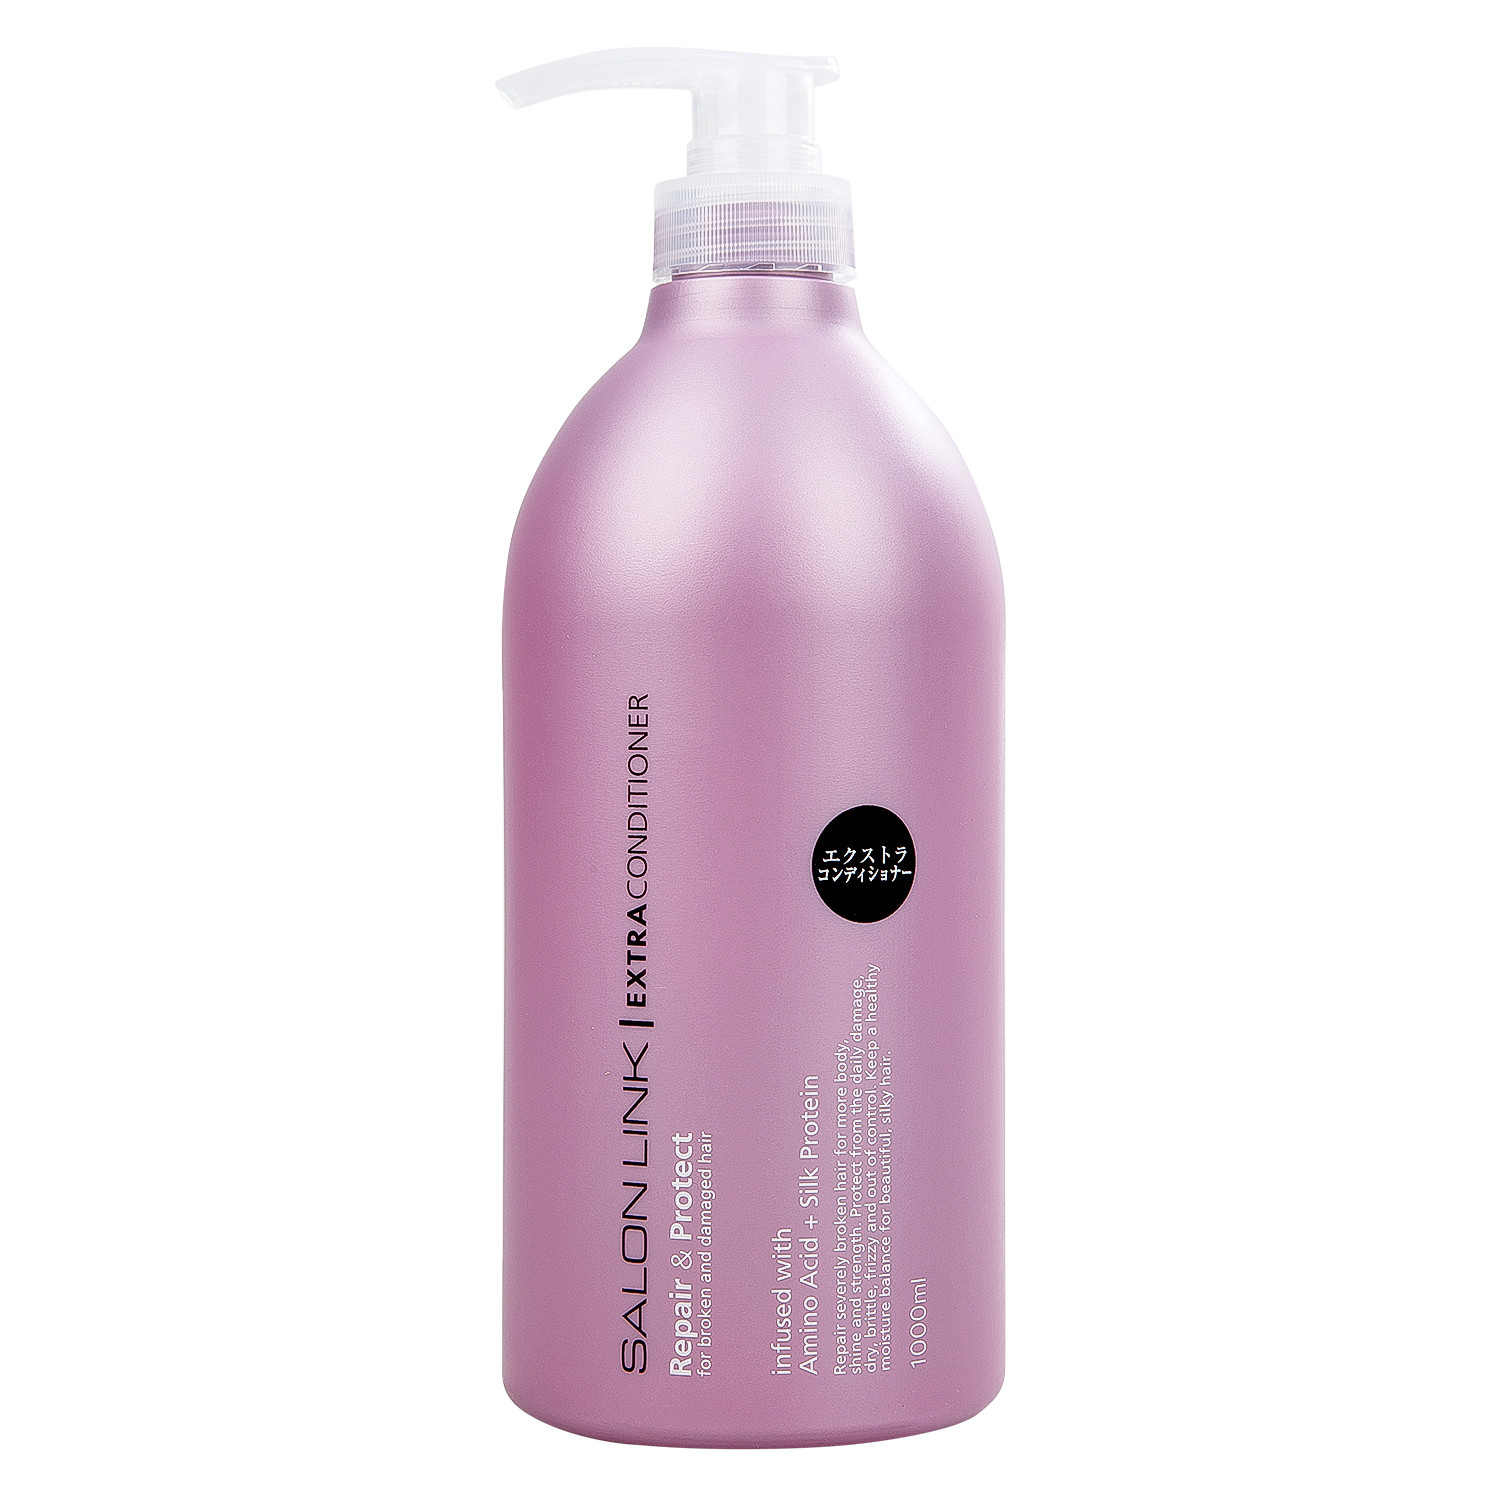 Combo Gội Xả Kumano Salon Link Extra Shampoo Conditioner phục hồi hư tổn tóc yếu 1000mlx2